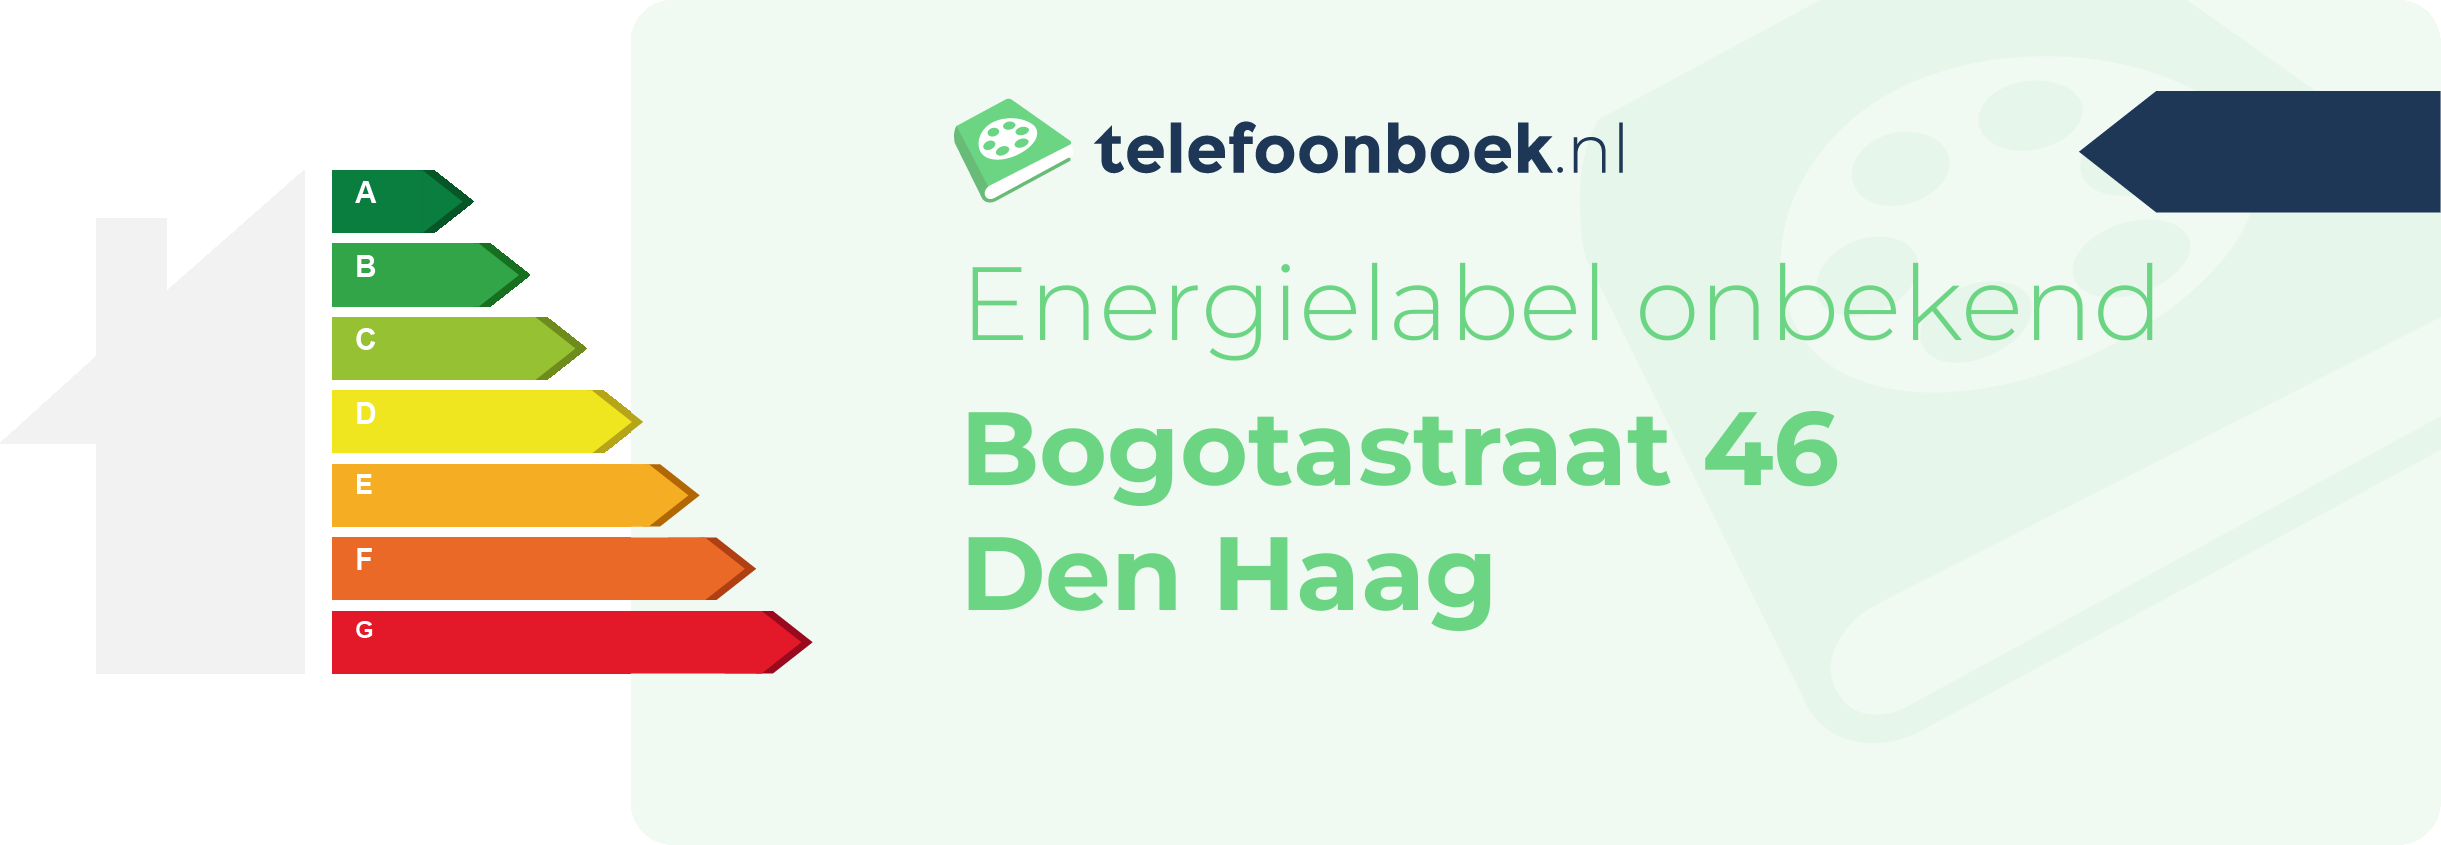 Energielabel Bogotastraat 46 Den Haag